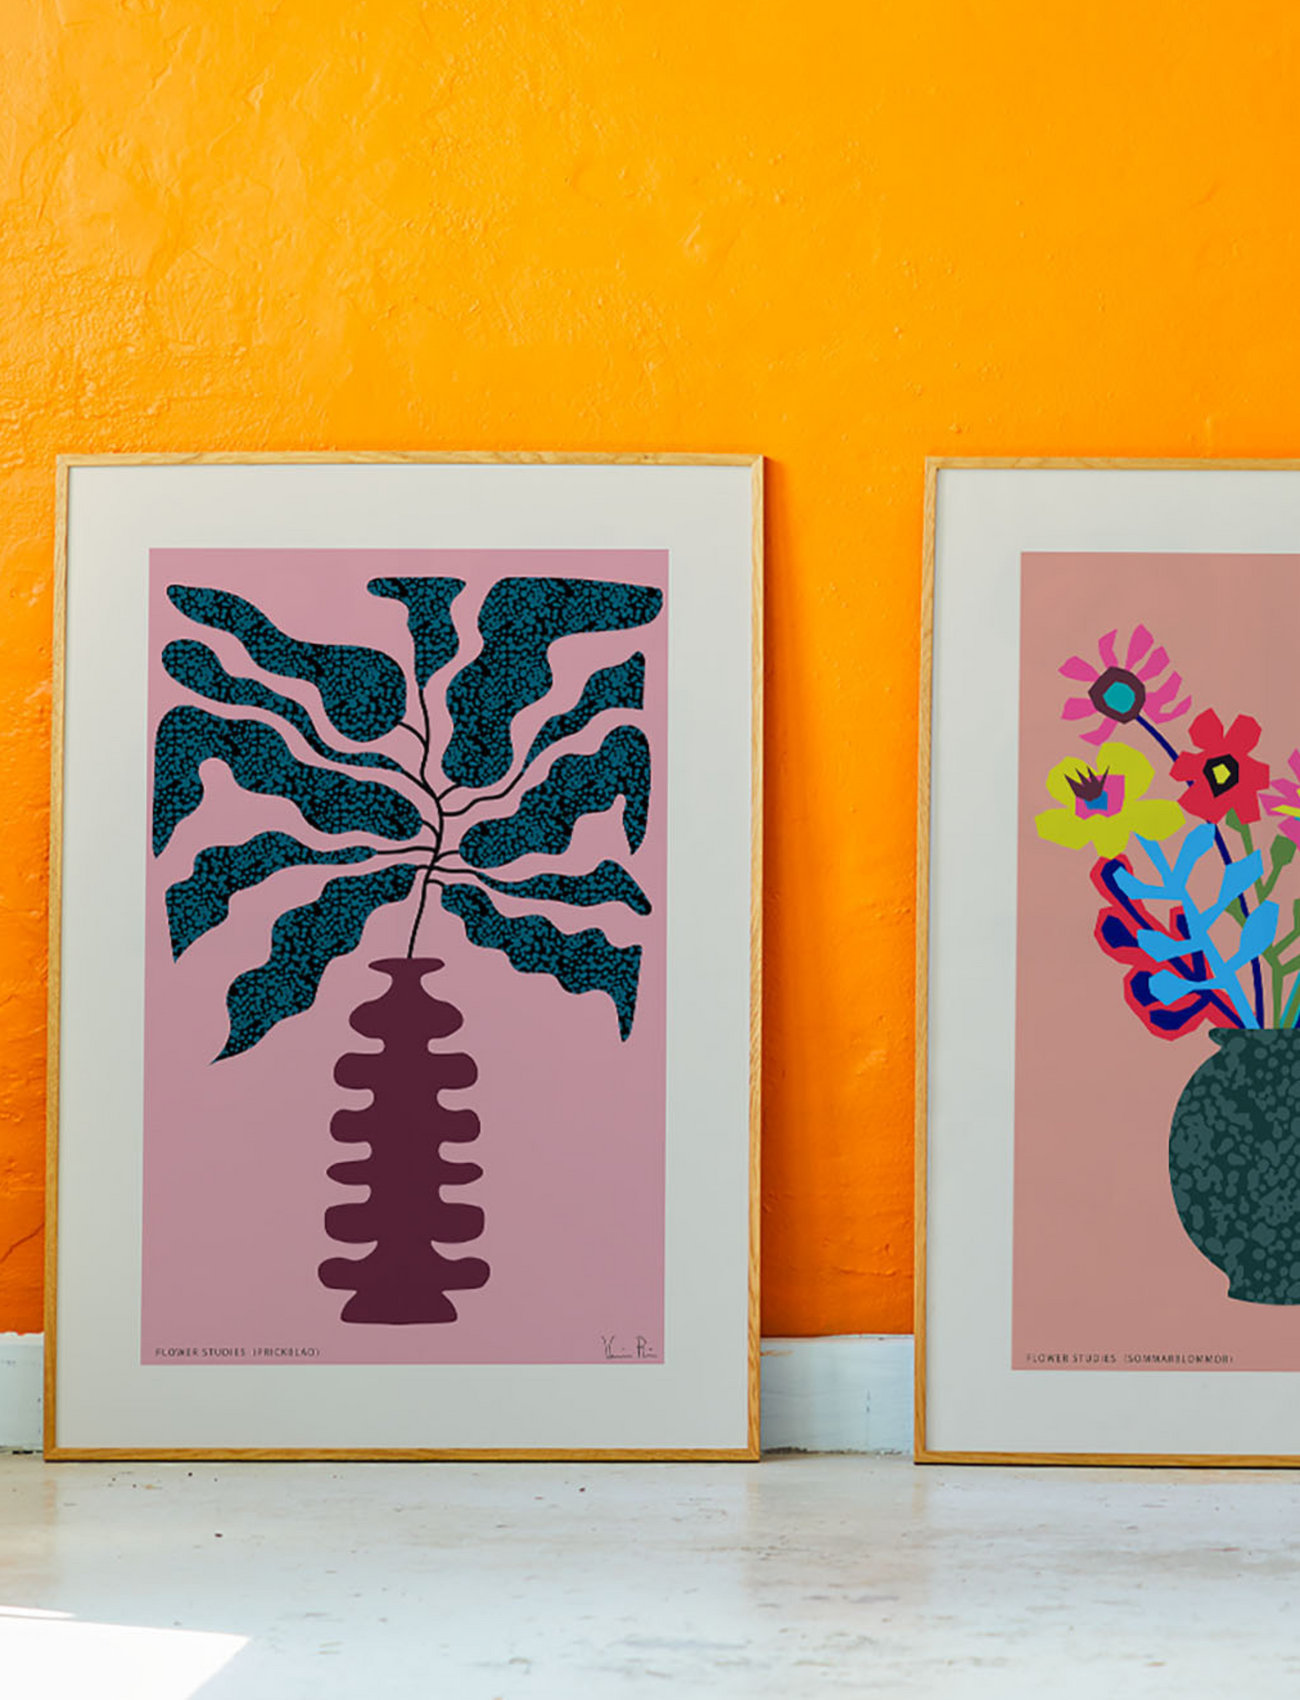 Paper Collective - Flower Studies 01 (Prickblad) - 50x70 - kasvitieteellinen - pink, red, green - 1